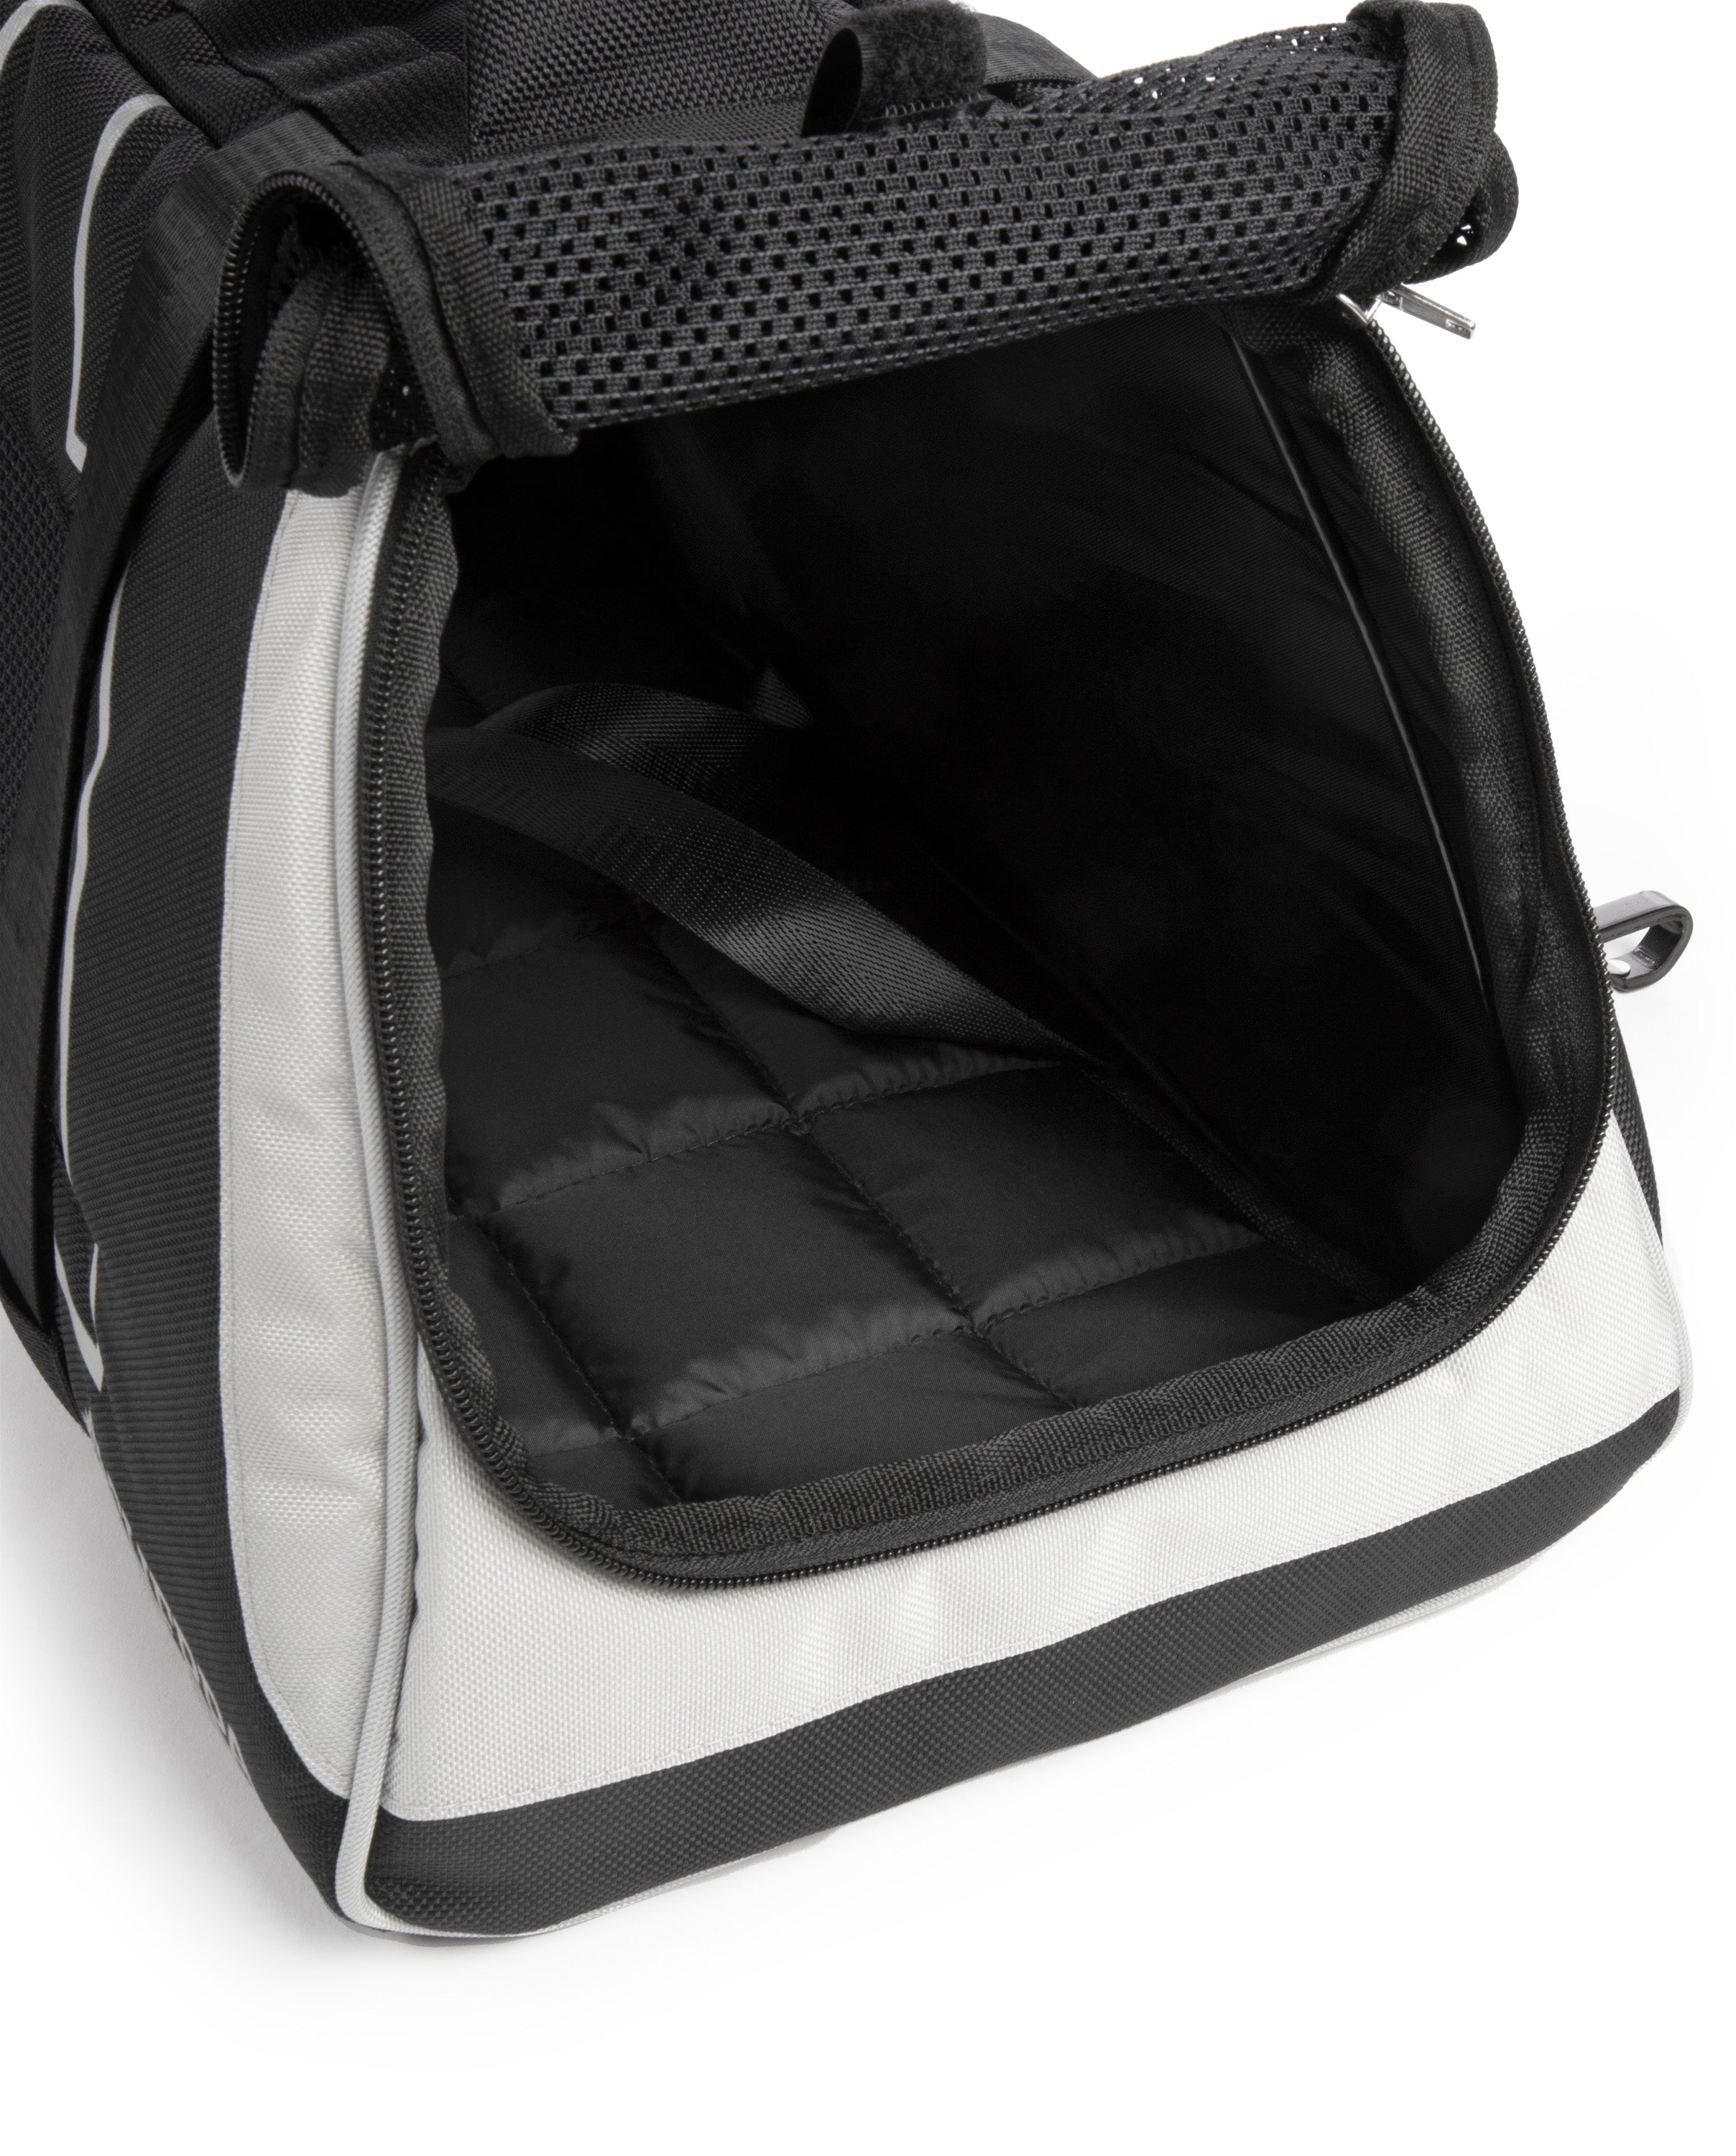 Sherpa Forma Frame Crash-Tested Travel Bag Pet Carrier - Black， Medium